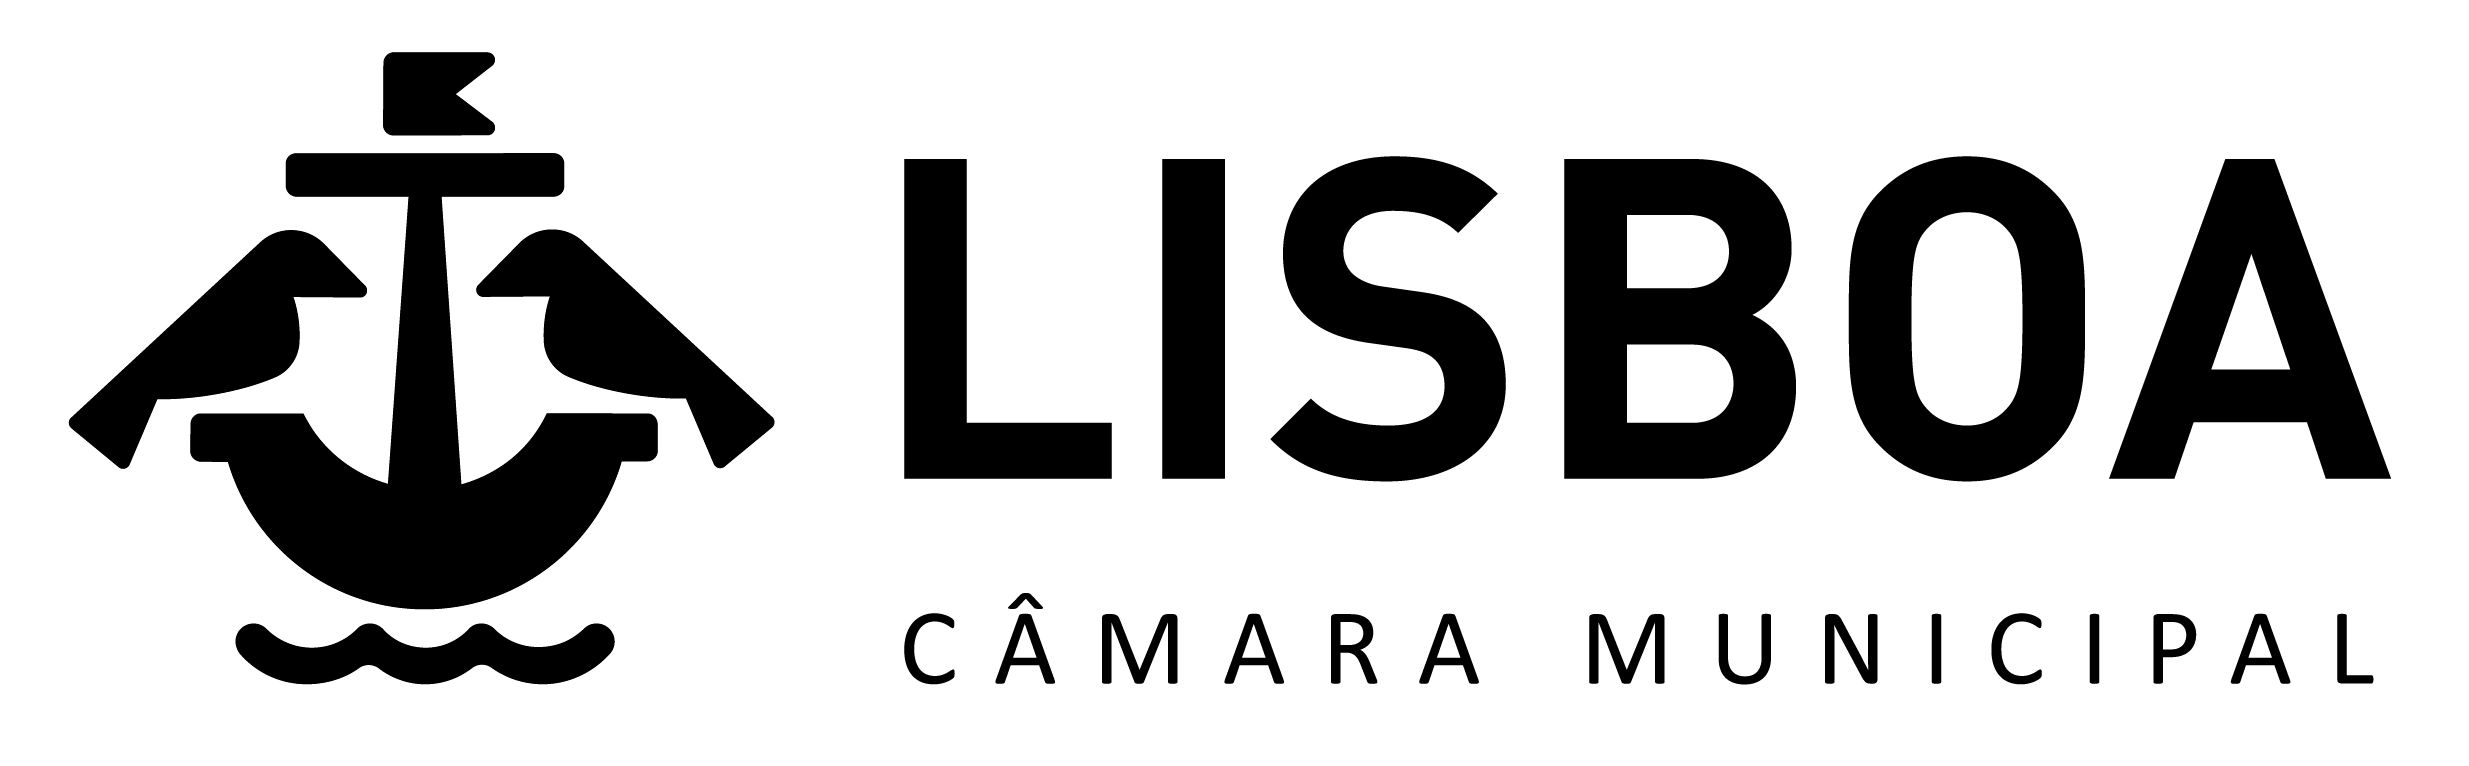 Logo Lisboa